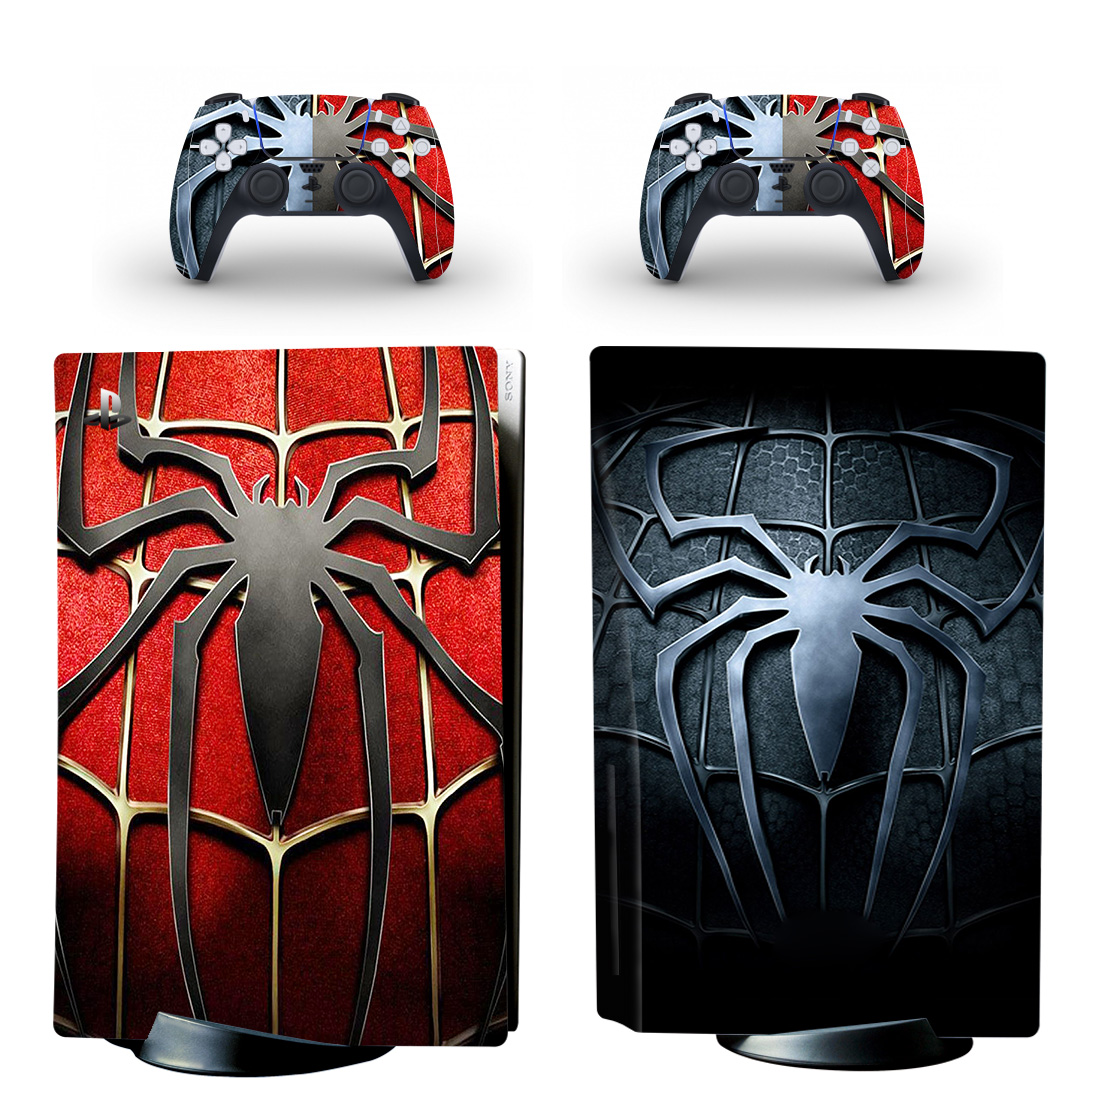 Spider-Man Symbol PS5 Skin Sticker Decal